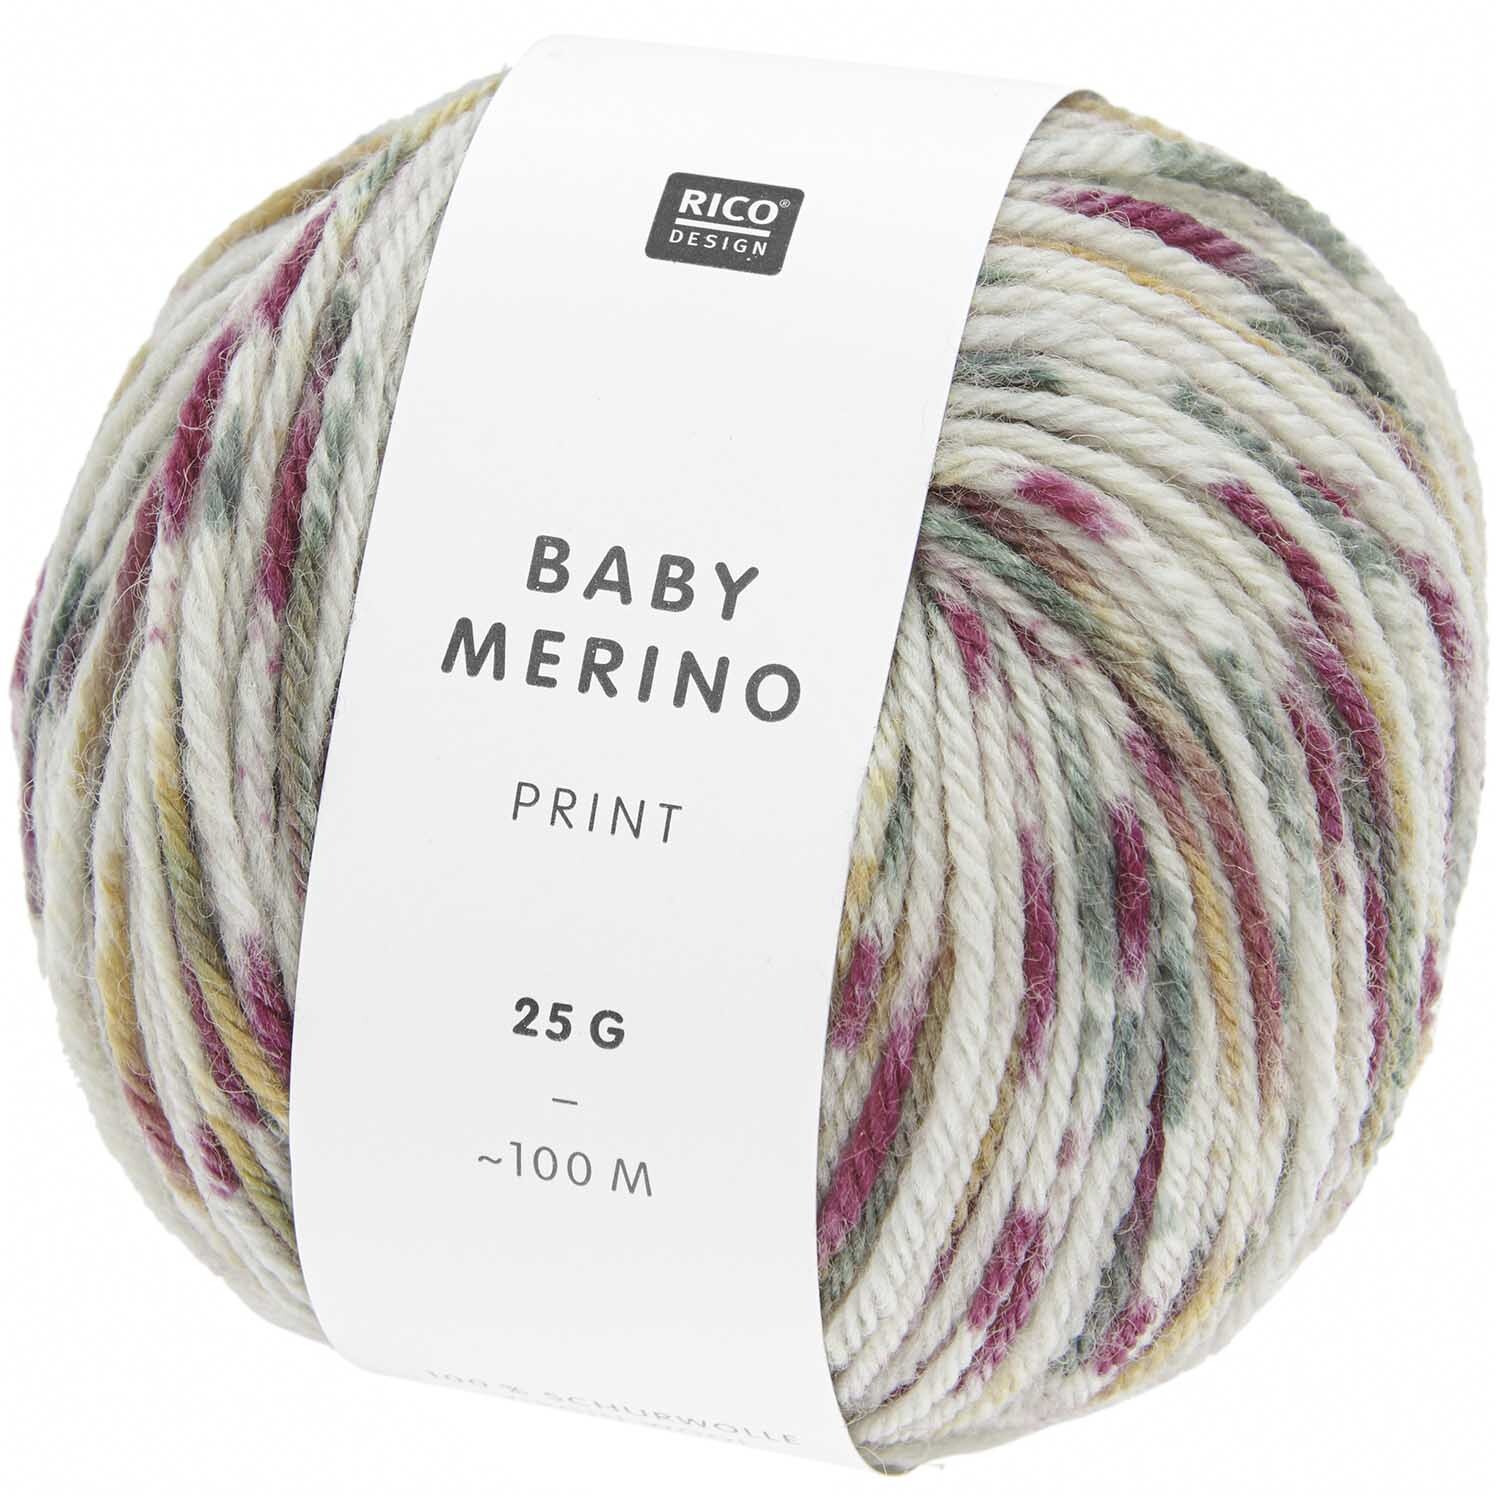 Baby Merino Print